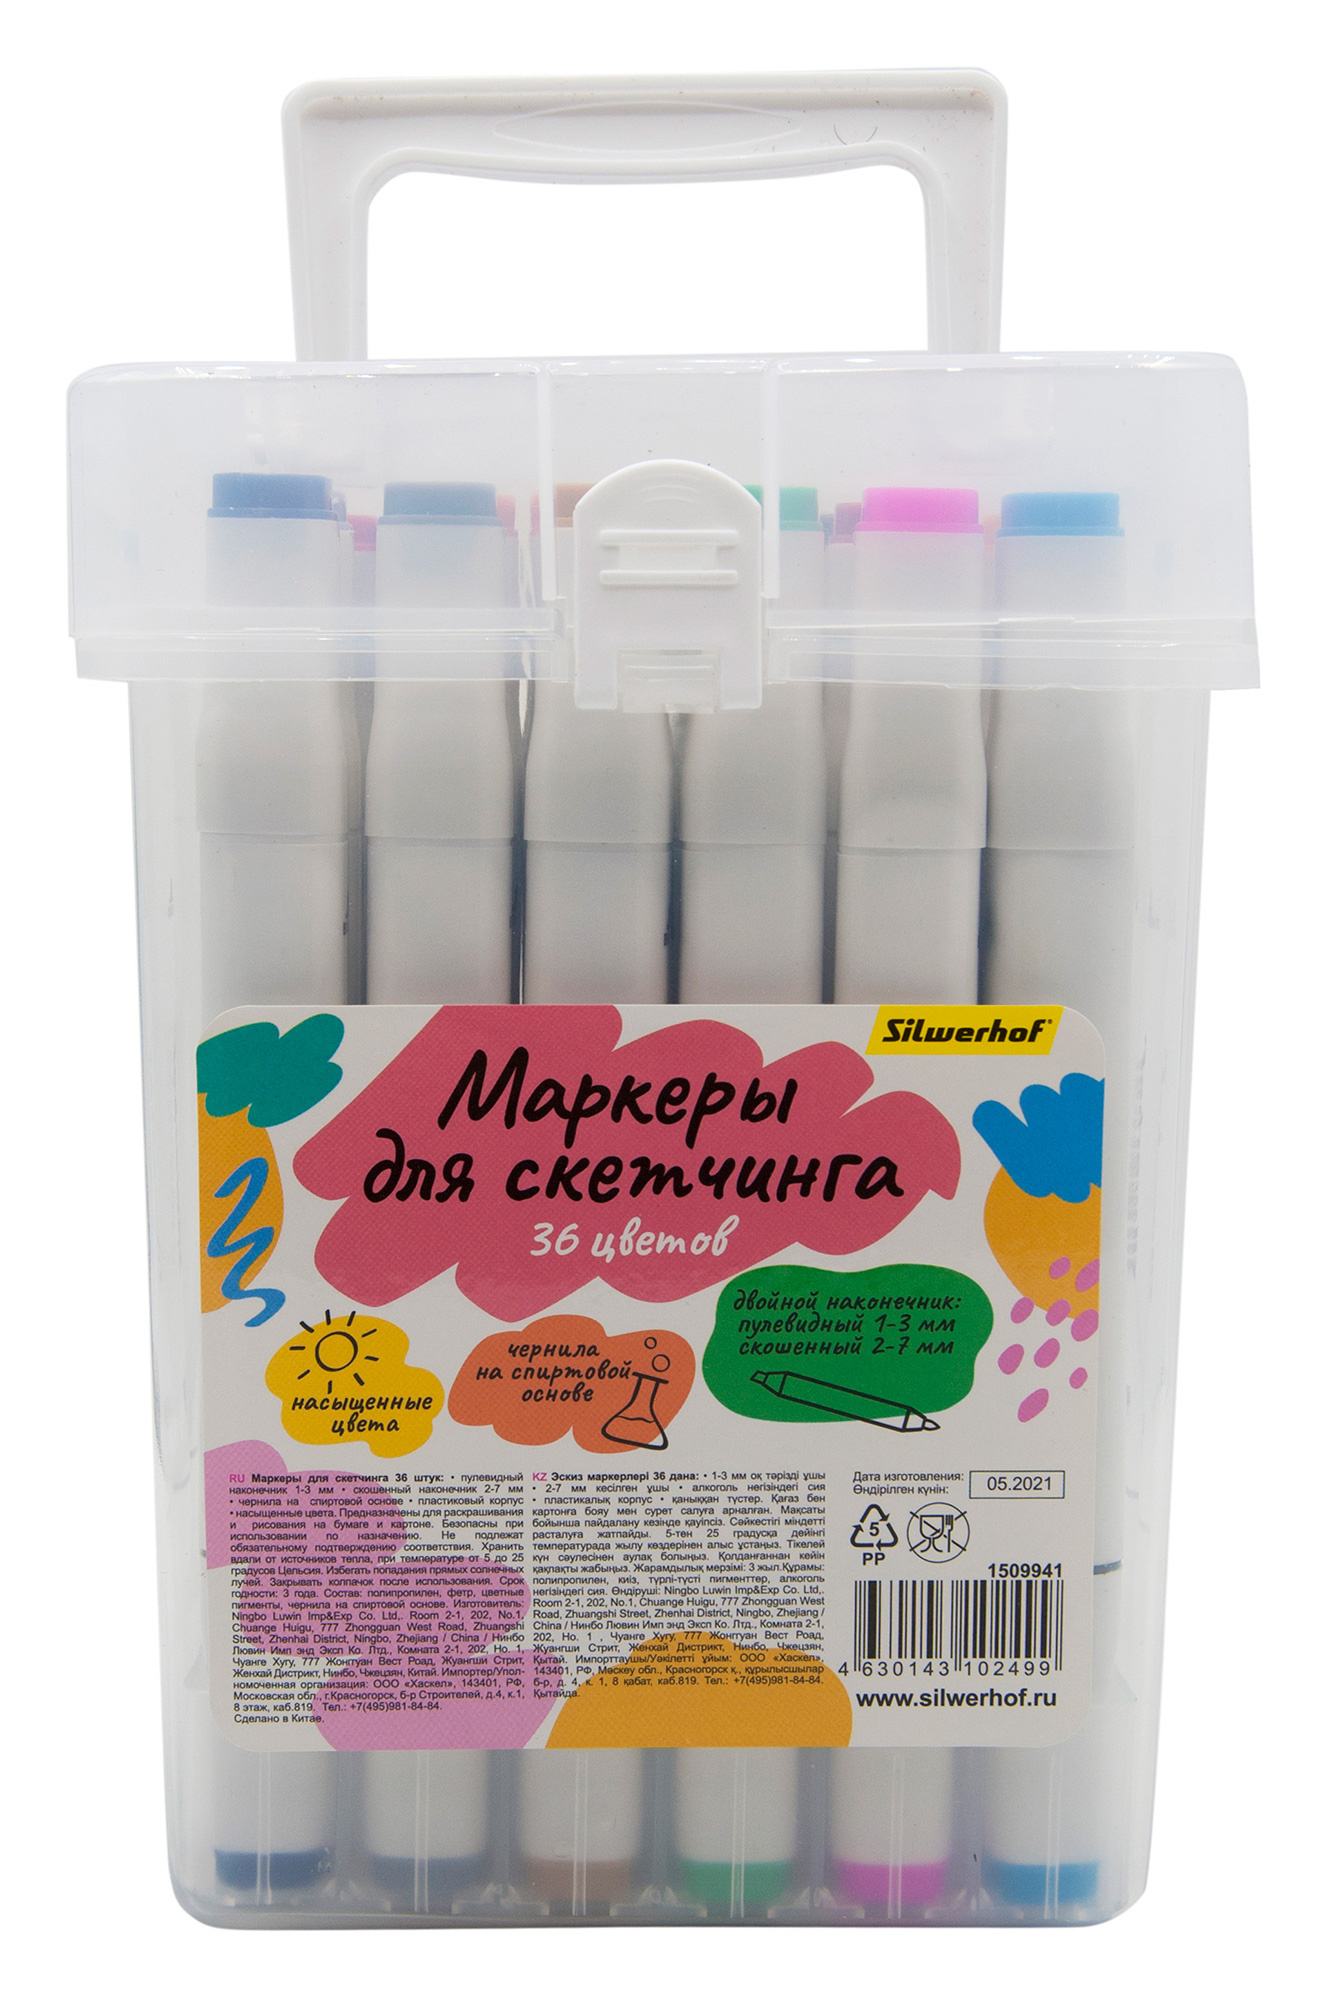 Набор маркеров для скетчинга Silwerhof двойной пиш. наконечник 1-7мм 36цв. пластиковая коробка (36шт.)